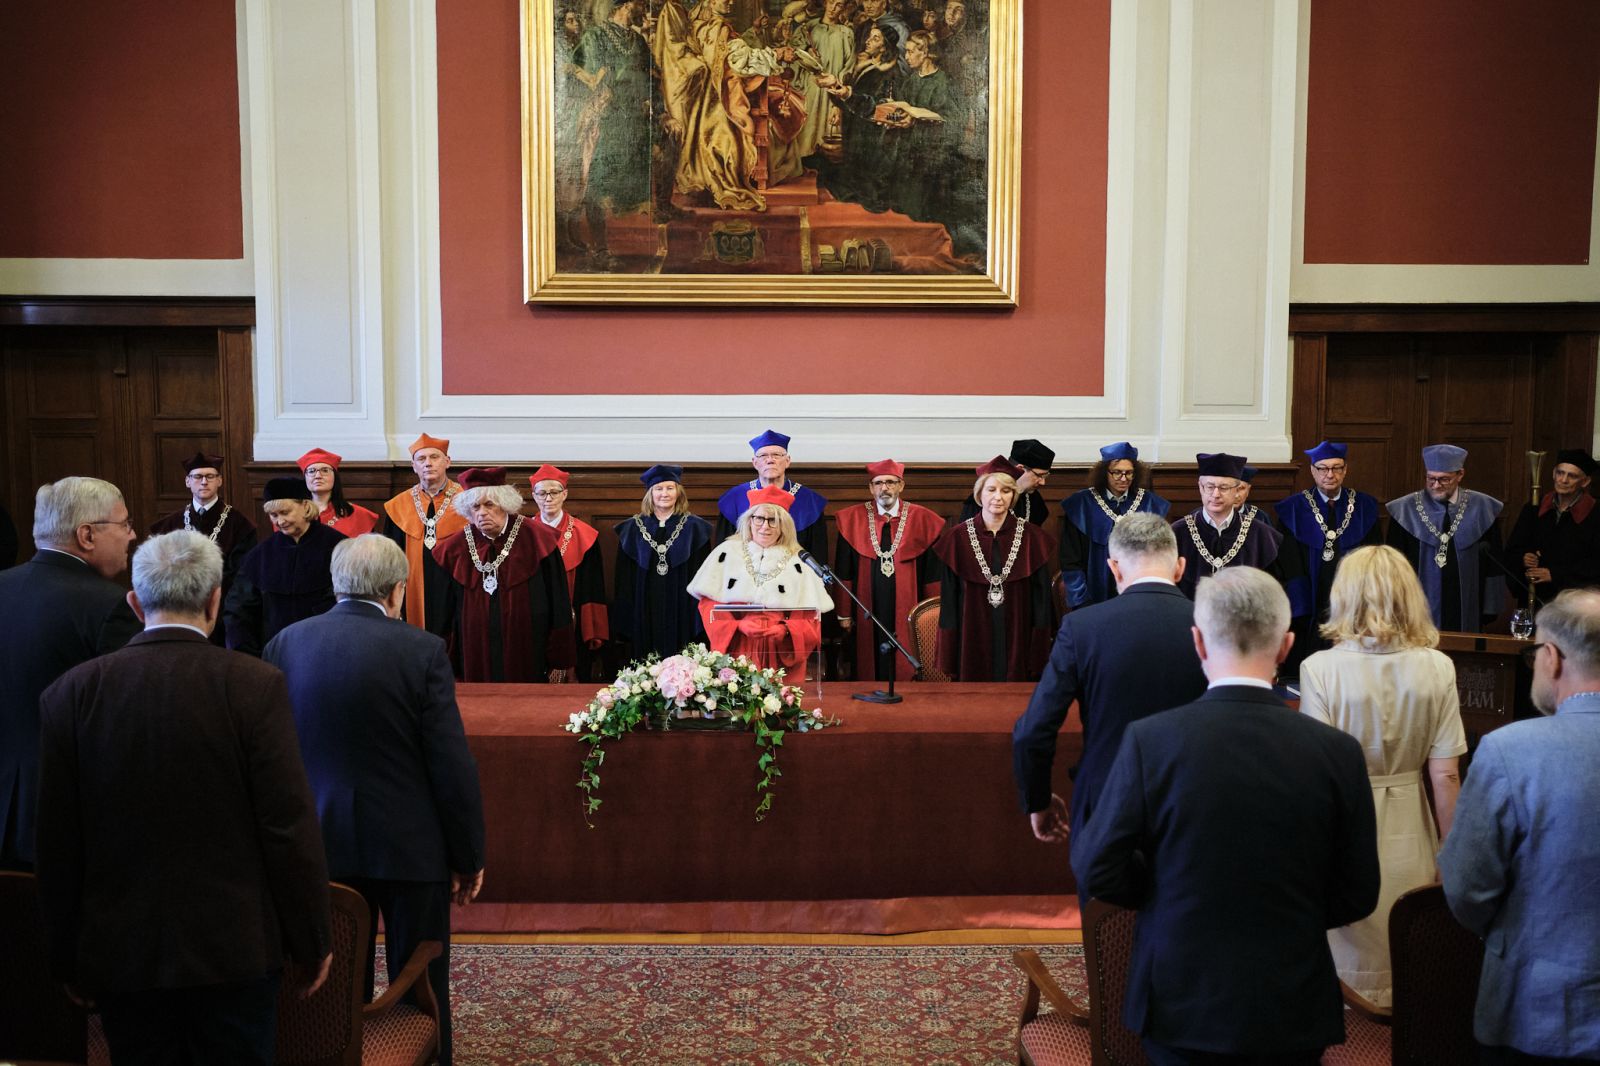 Stół prezydialny w Auli Lubrańskiego, za którym zasiadają Rektor i Prorektorzy oraz członkowie senatu UAM, wszyscy w odświętnych togach. Widać też część publiczności.